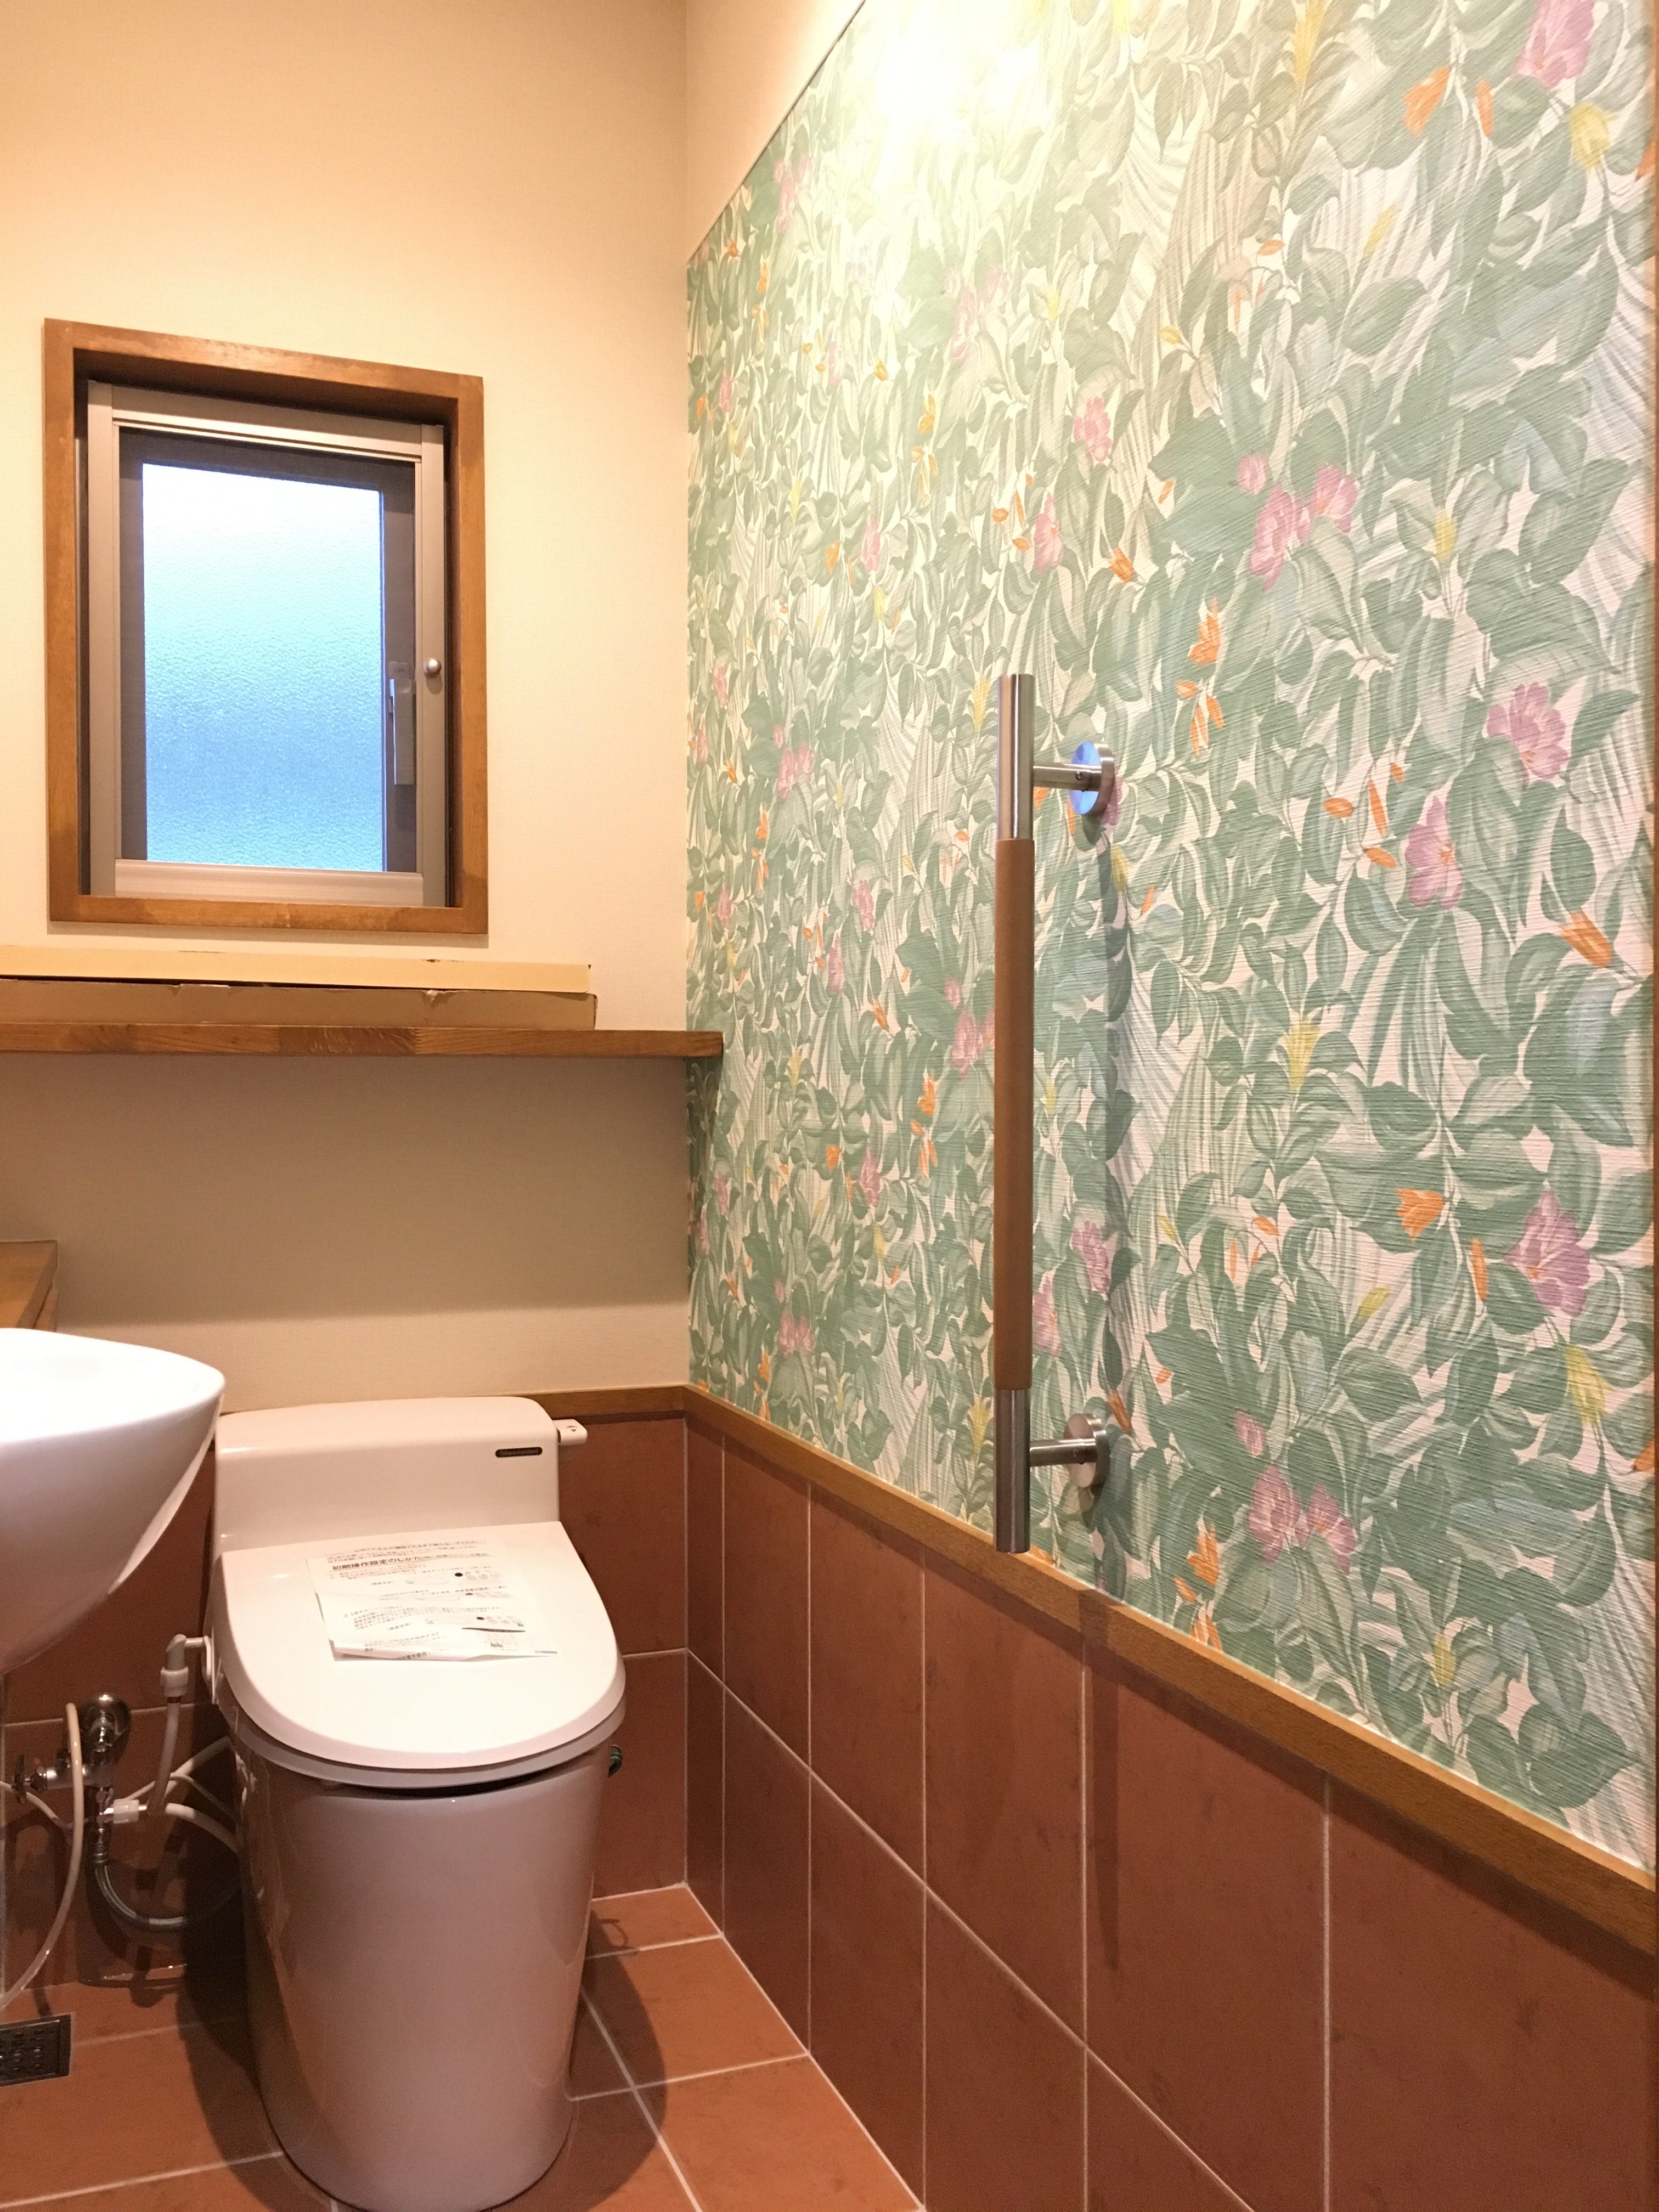 トイレ 壁紙 シミュレーショントイレ 家 壁紙 シミュレーション 無料のHD壁紙画像